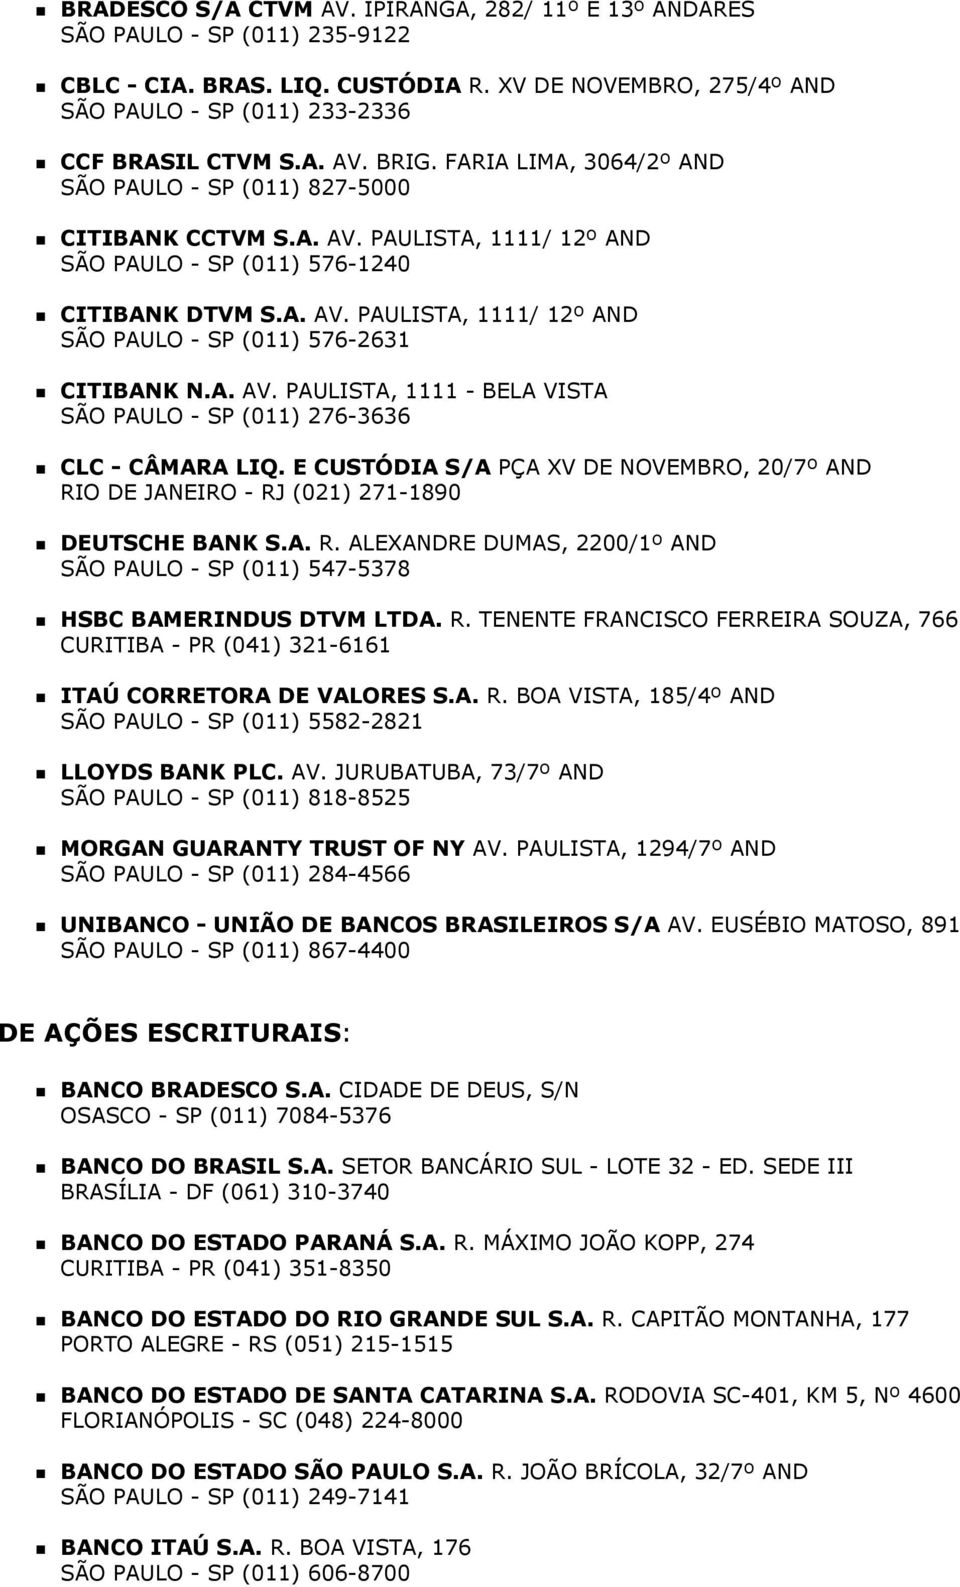 A. AV. PAULISTA, 1111 - BELA VISTA SÃO PAULO - SP (011) 276-3636 CLC - CÂMARA LIQ. E CUSTÓDIA S/A PÇA XV DE NOVEMBRO, 20/7º AND RI